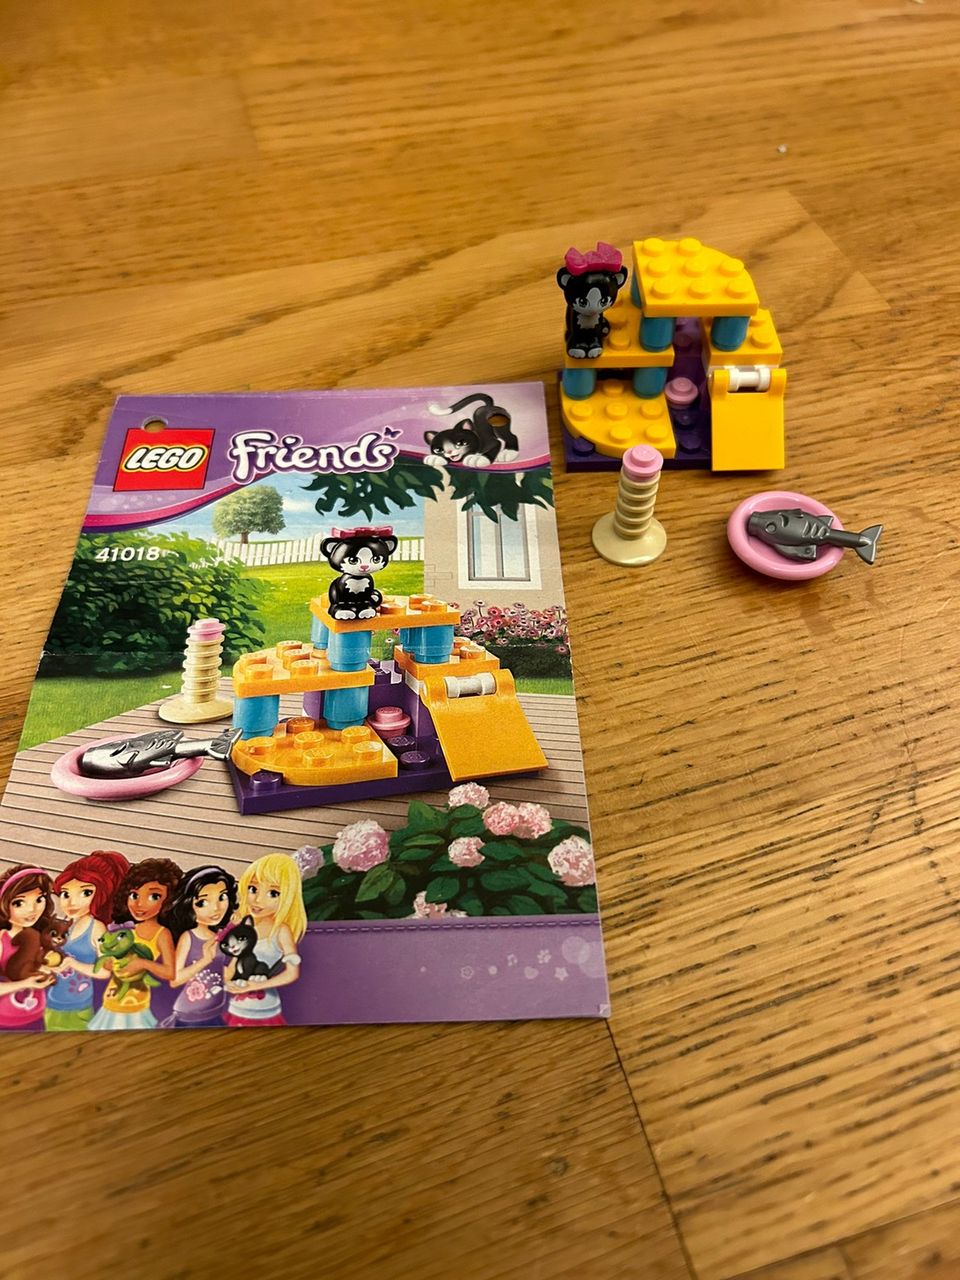 41018 Lego Friends kissan leikkipaikka